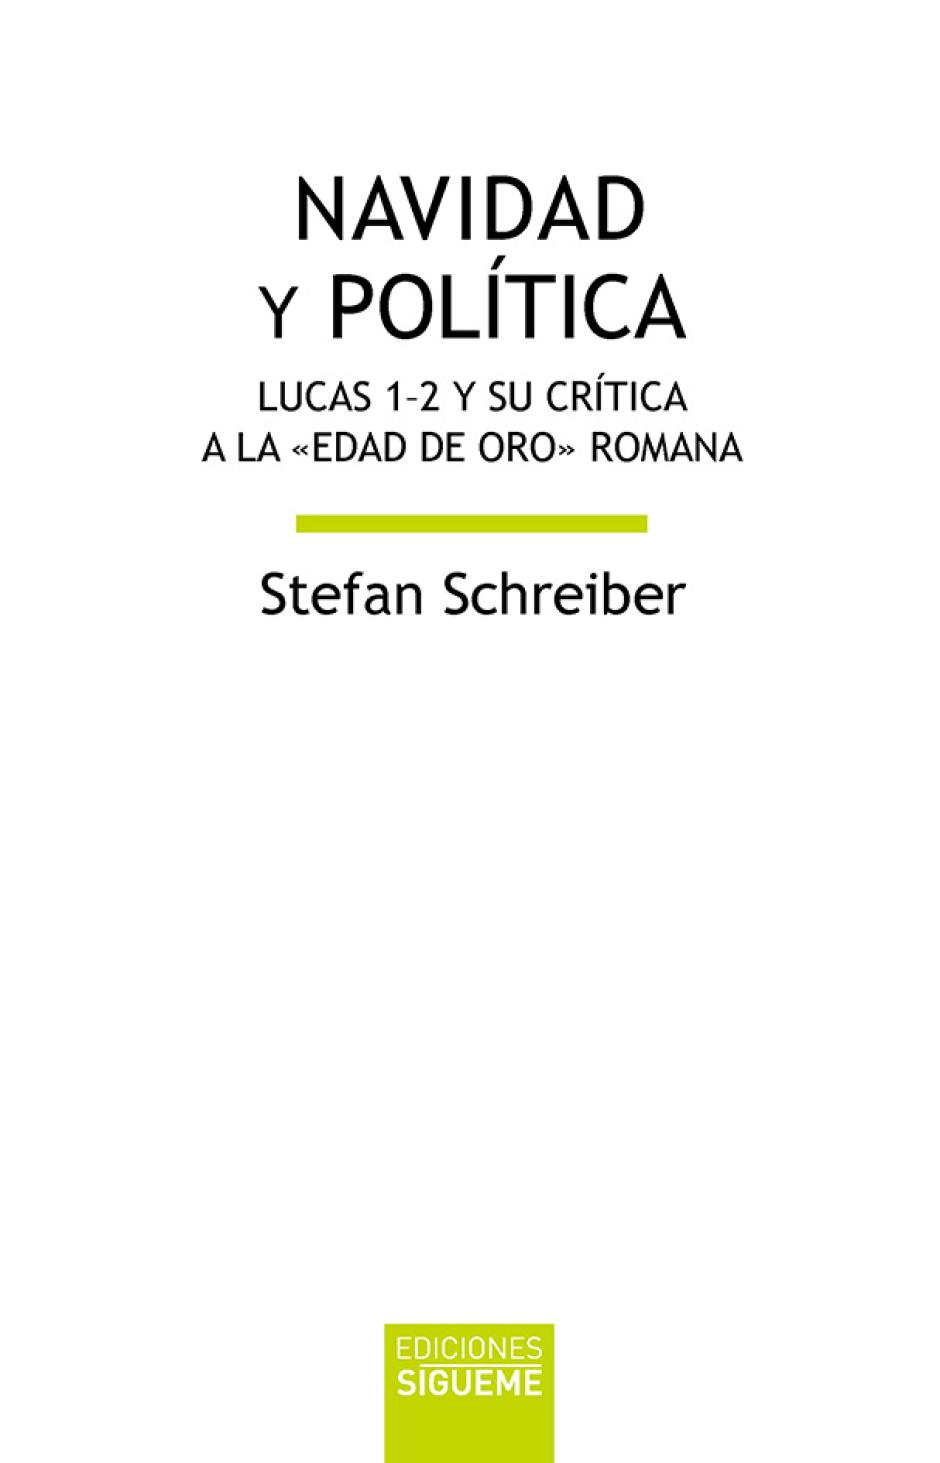 NAVIDAD Y POLÍTICA. LUCAS 1-2 Y SU CRÍTICA A LA «EDAD DE ORO» ROMANA de Stefan Schreiber (Sígueme)